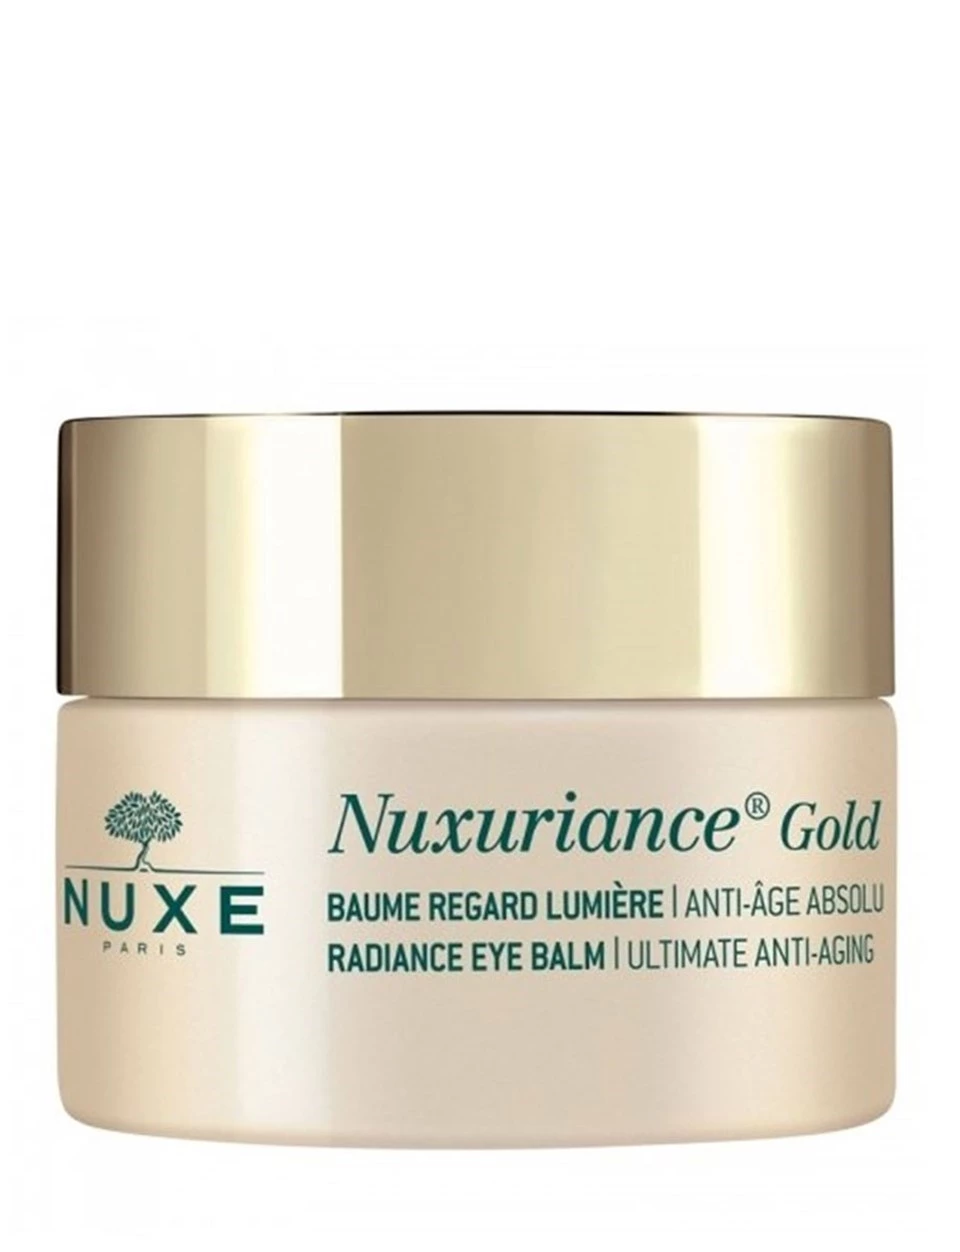 Nuxe Nuxuriance Gold Radiance Eye Balm 15 Tüm cilt tipleri için göz çevresi bakım kremi.